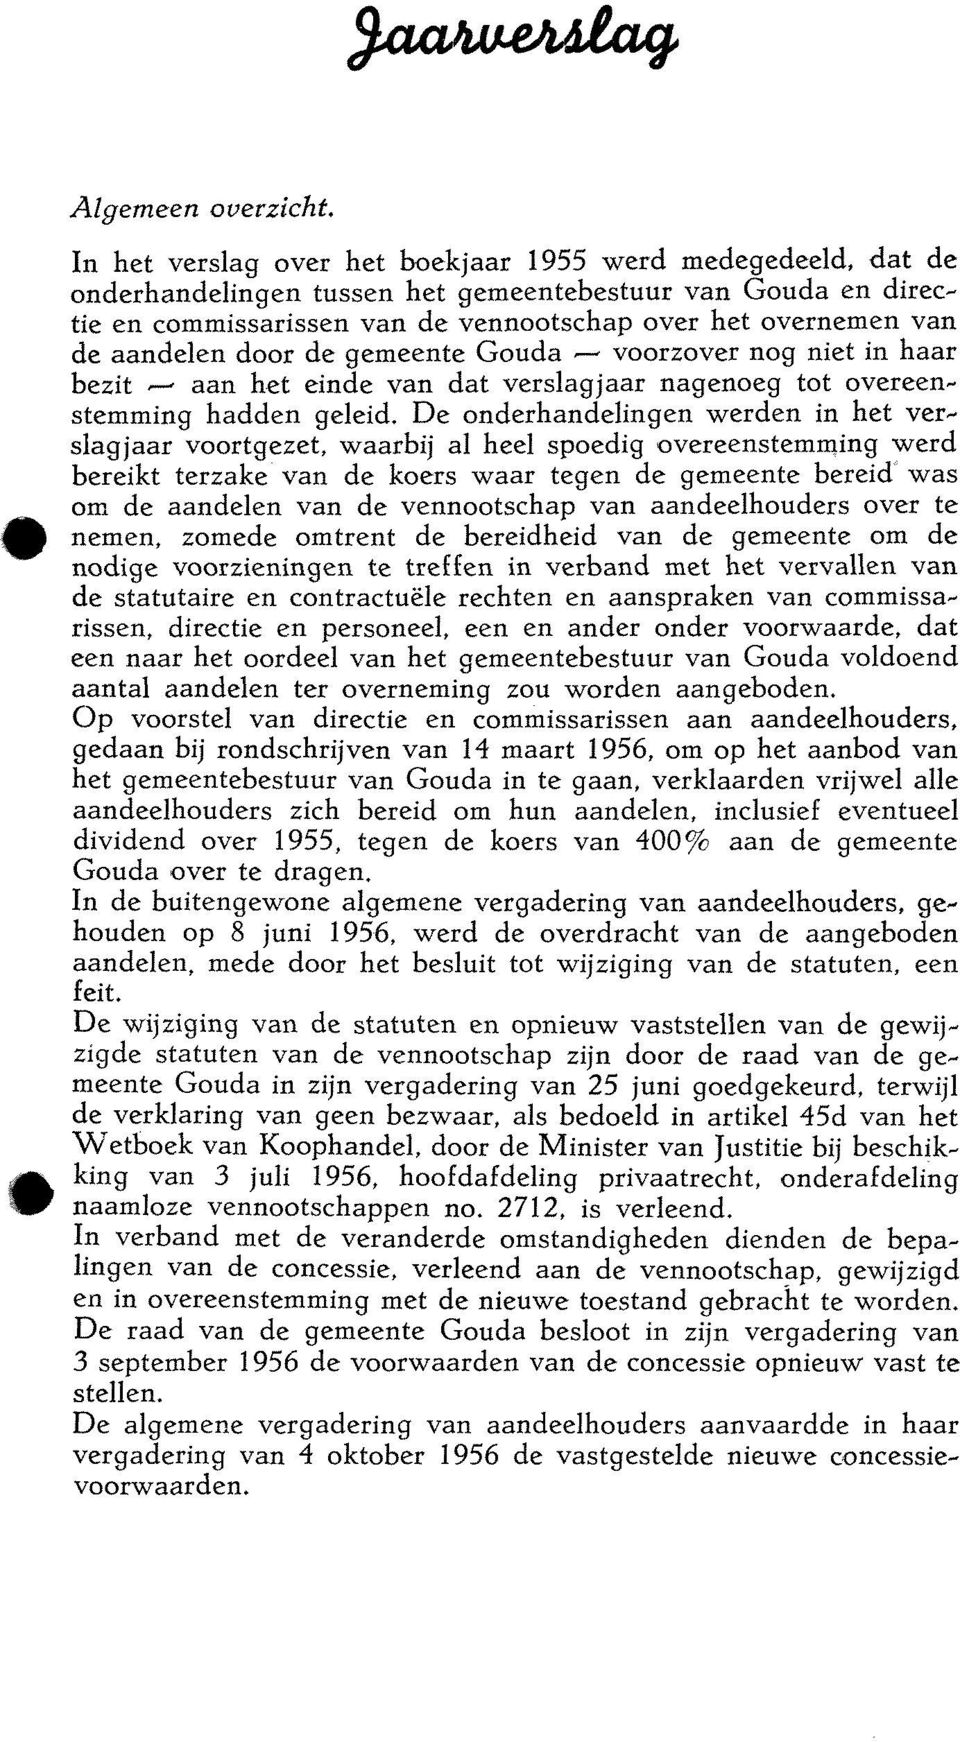 aandelen door de gemeente Gouda -- voorzover nog niet in haar bezit i- aan het einde van dat verslagjaar nagenoeg tot overeenstemming hadden geleid.